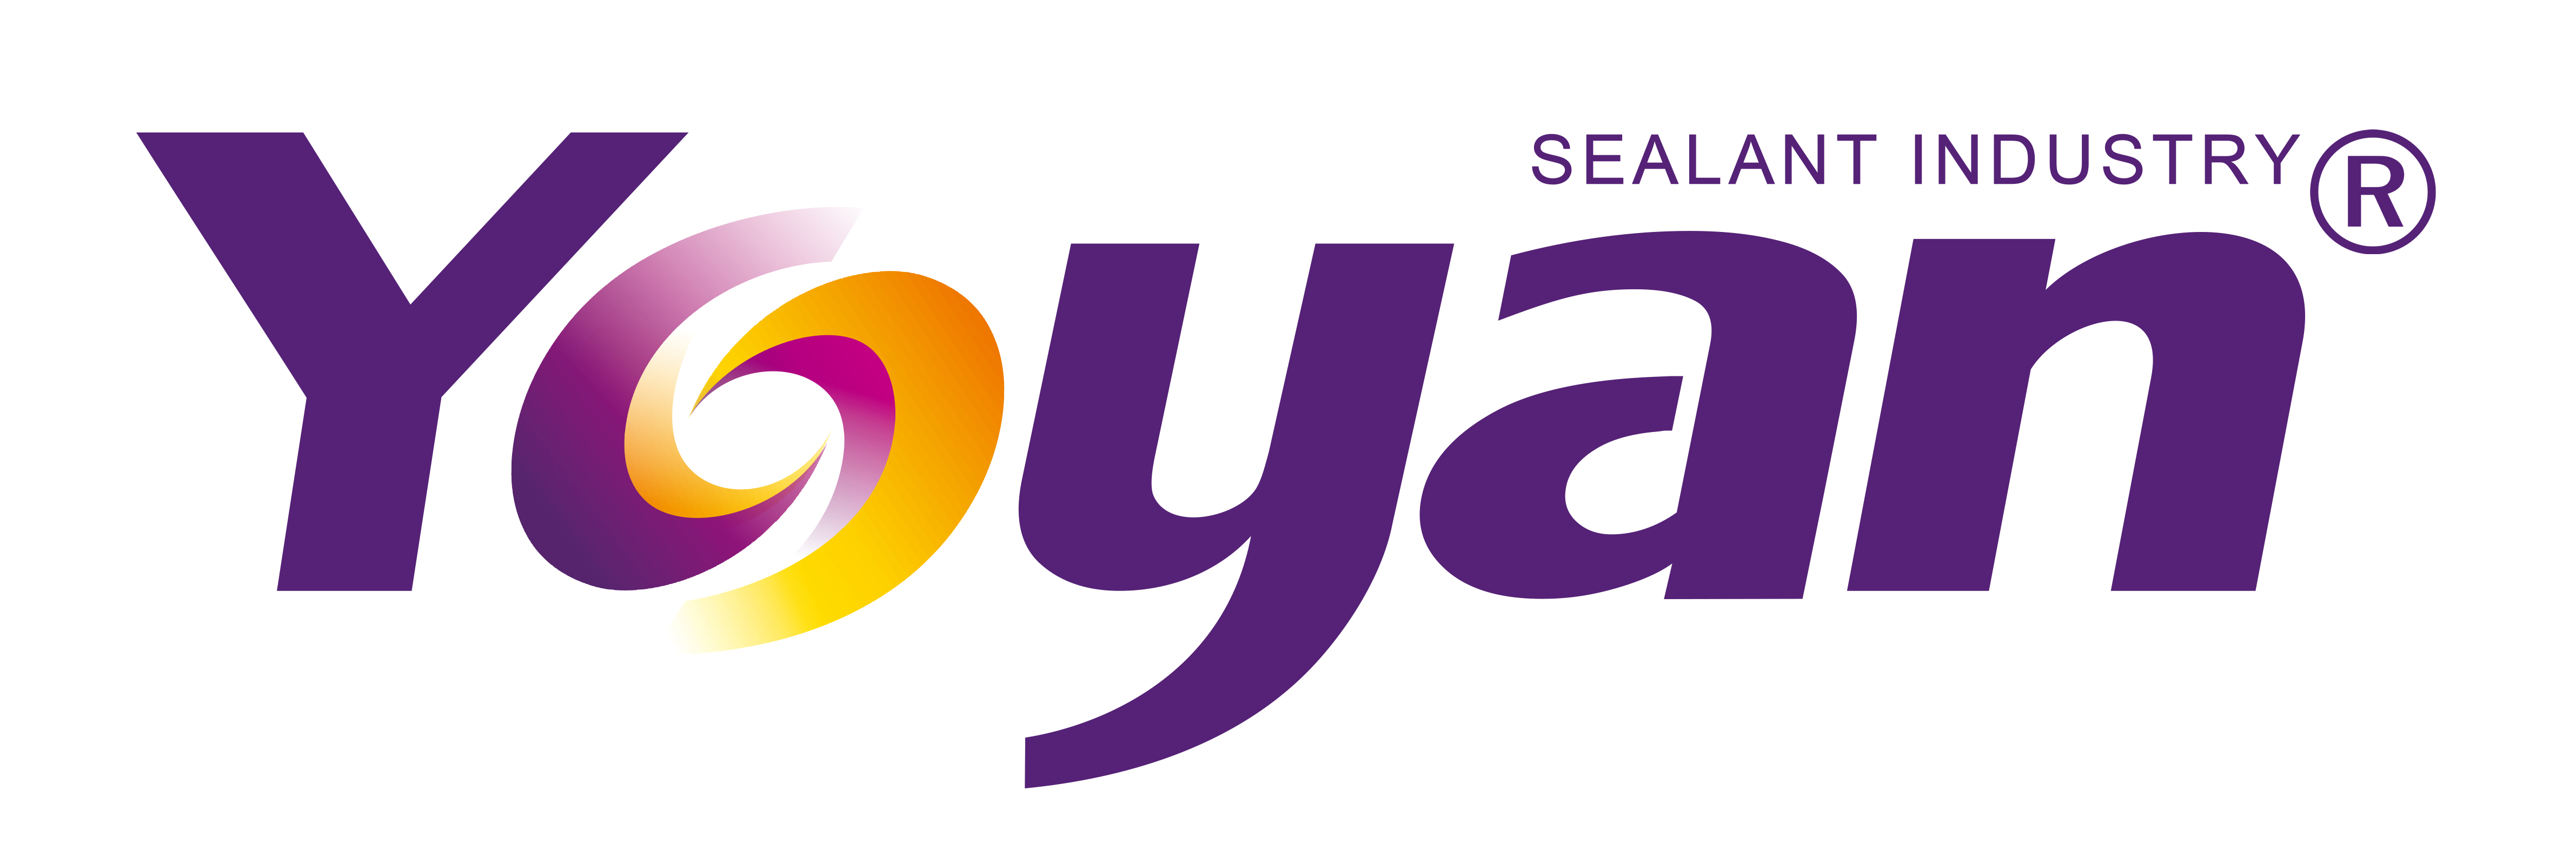 มณฑลซานตง Yongyan Sealant Industry Co.,Ltd.